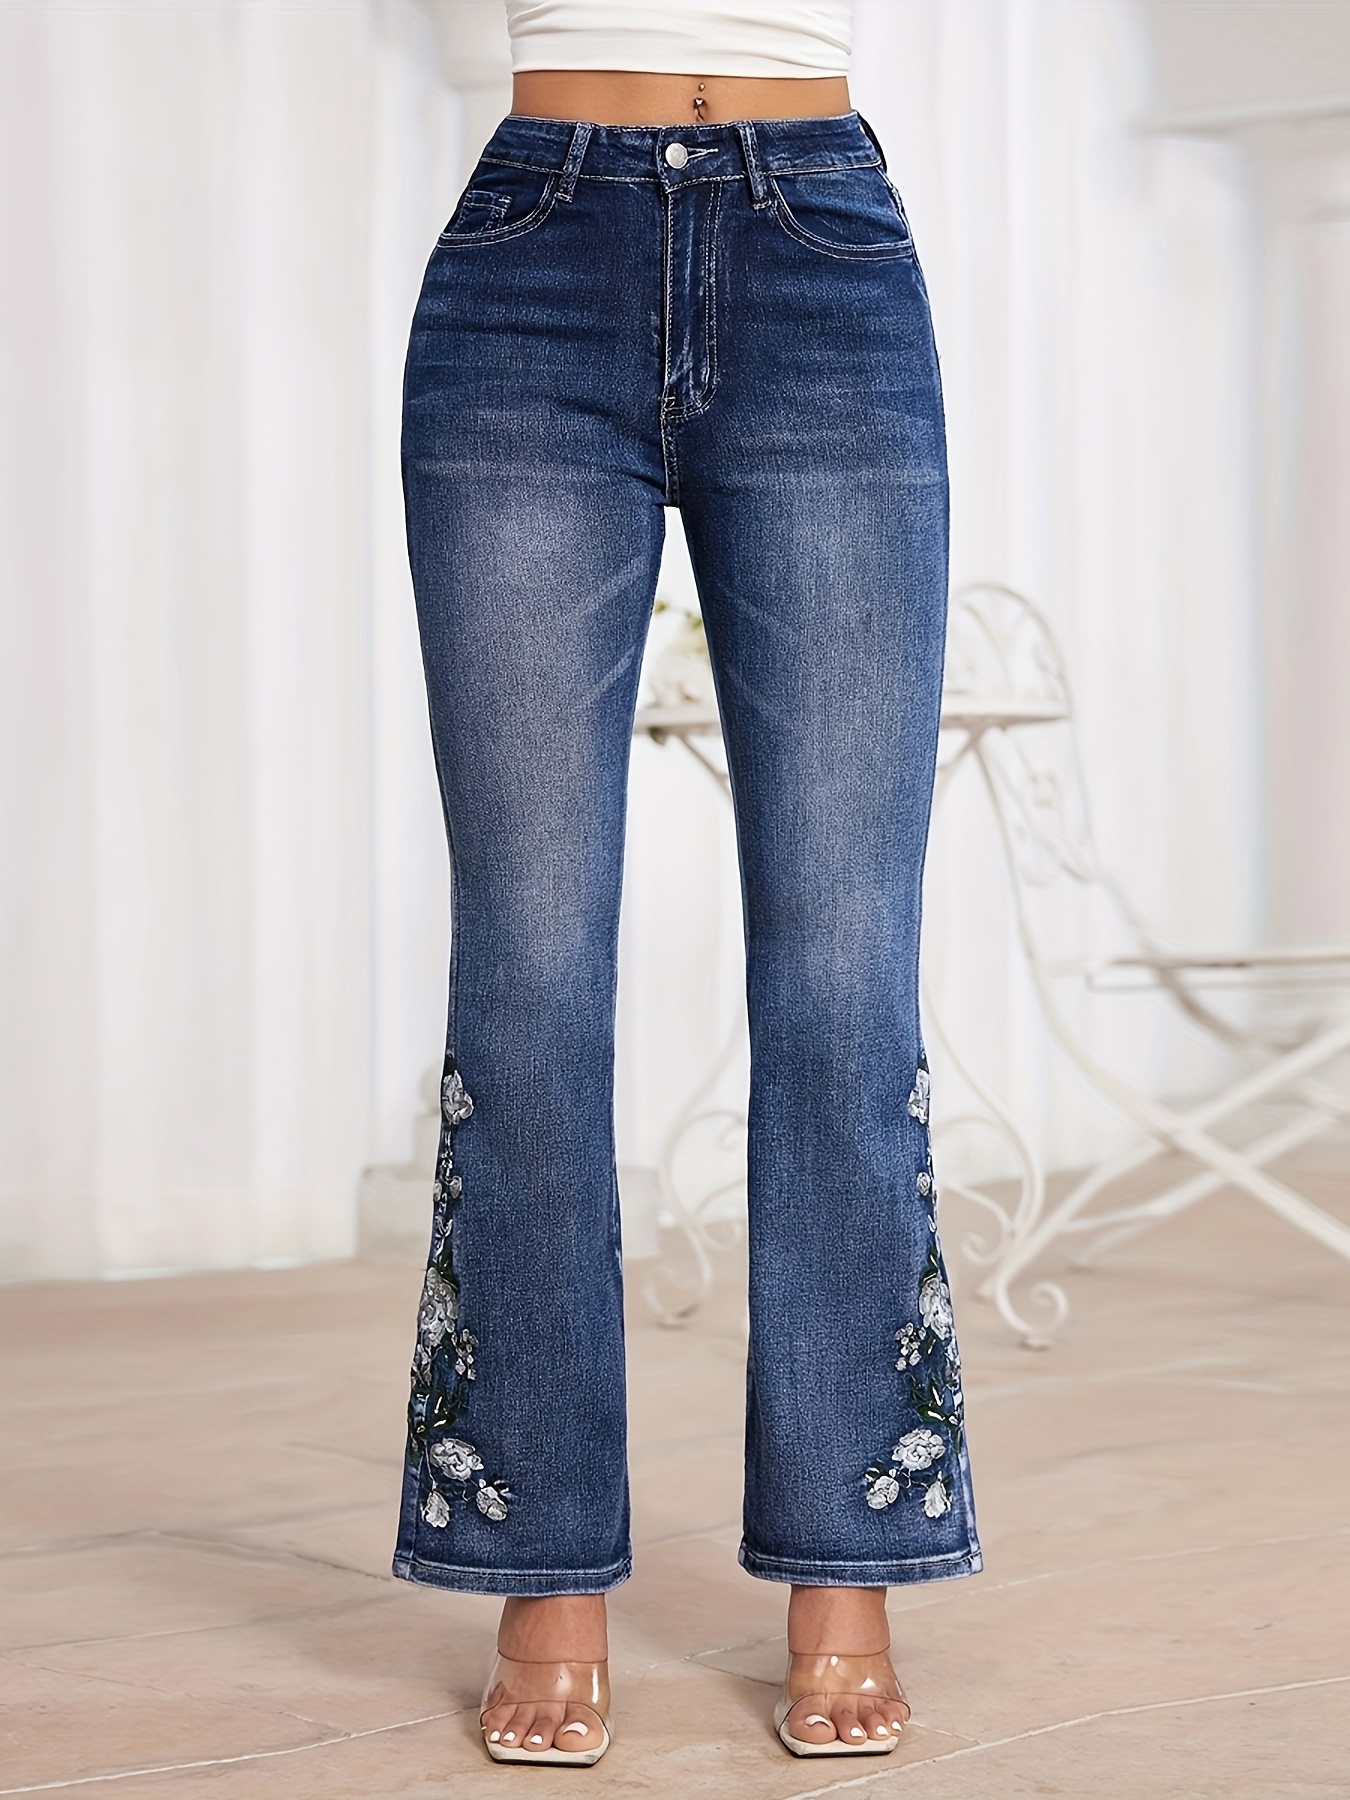  Jeans para mujer - Pantalones vaqueros ajustados capri con  bordado floral (color lavado ligero, talla 26) : Ropa, Zapatos y Joyería